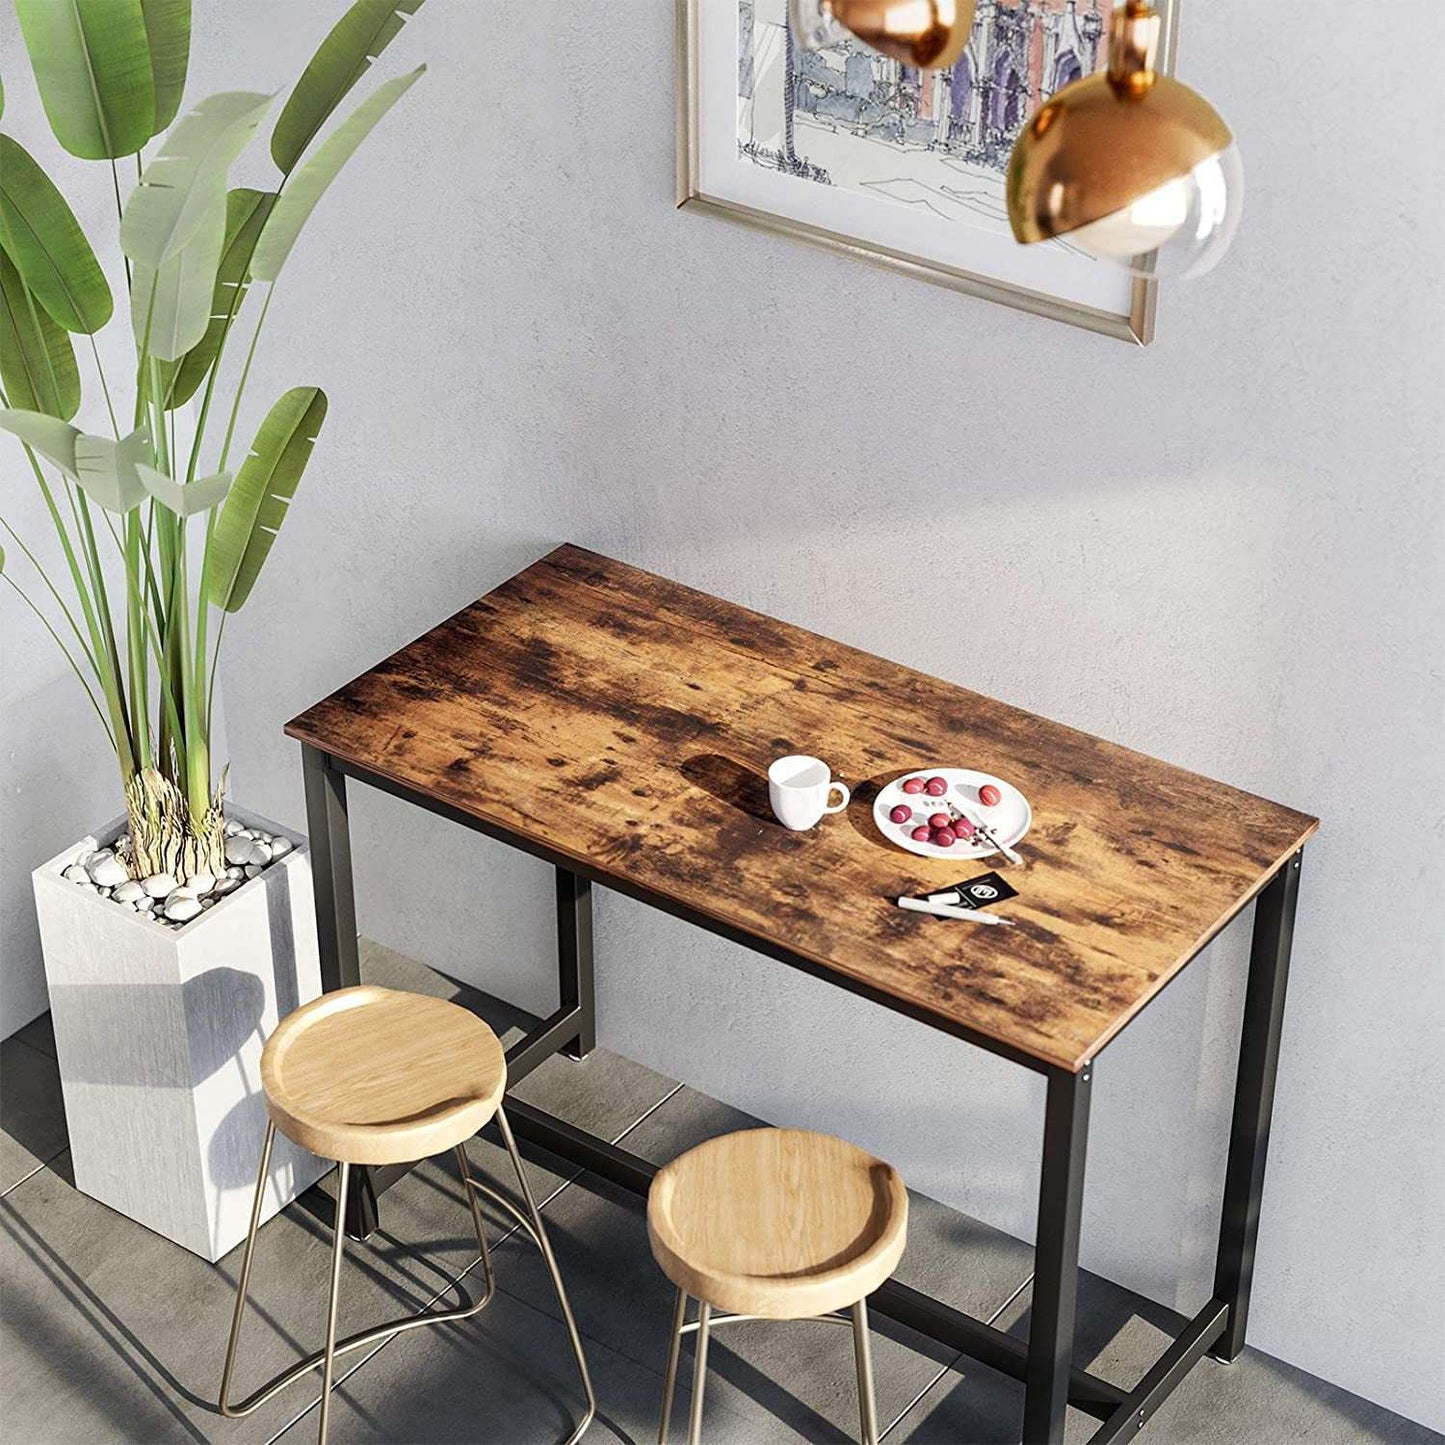 Table de bar en bois de Nancy - Table de cuisine vintage - Tables de bar de cuisine - Industriel - Marron - 120 x 60 x 90 cm (L x L x H)